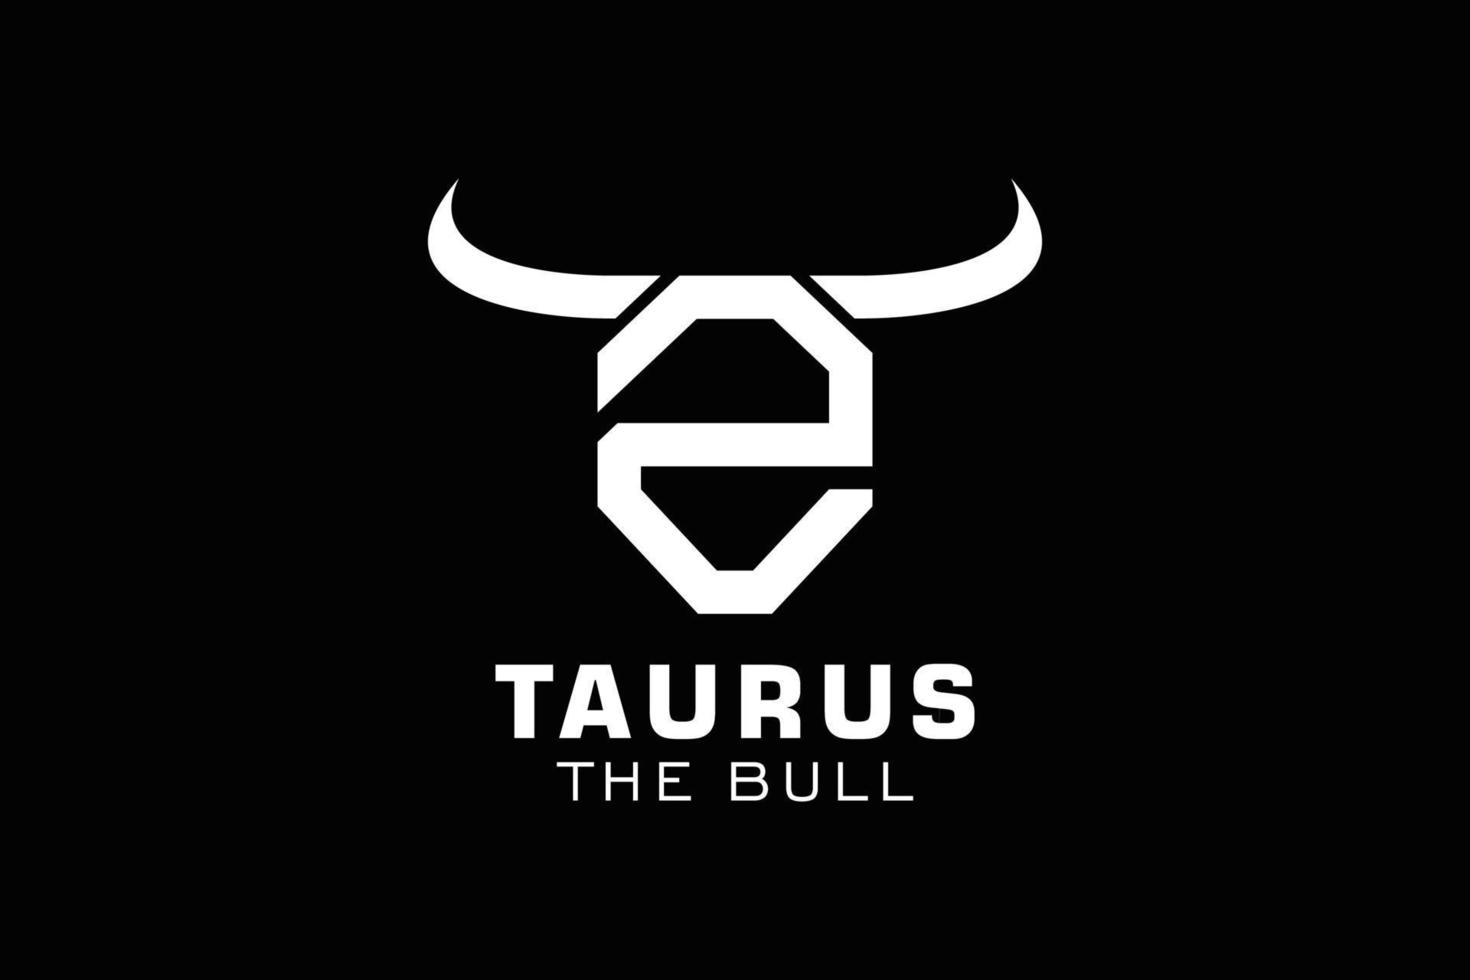 Letter Z logo, Bull logo,head bull logo, monogram Logo Design Template Element vector